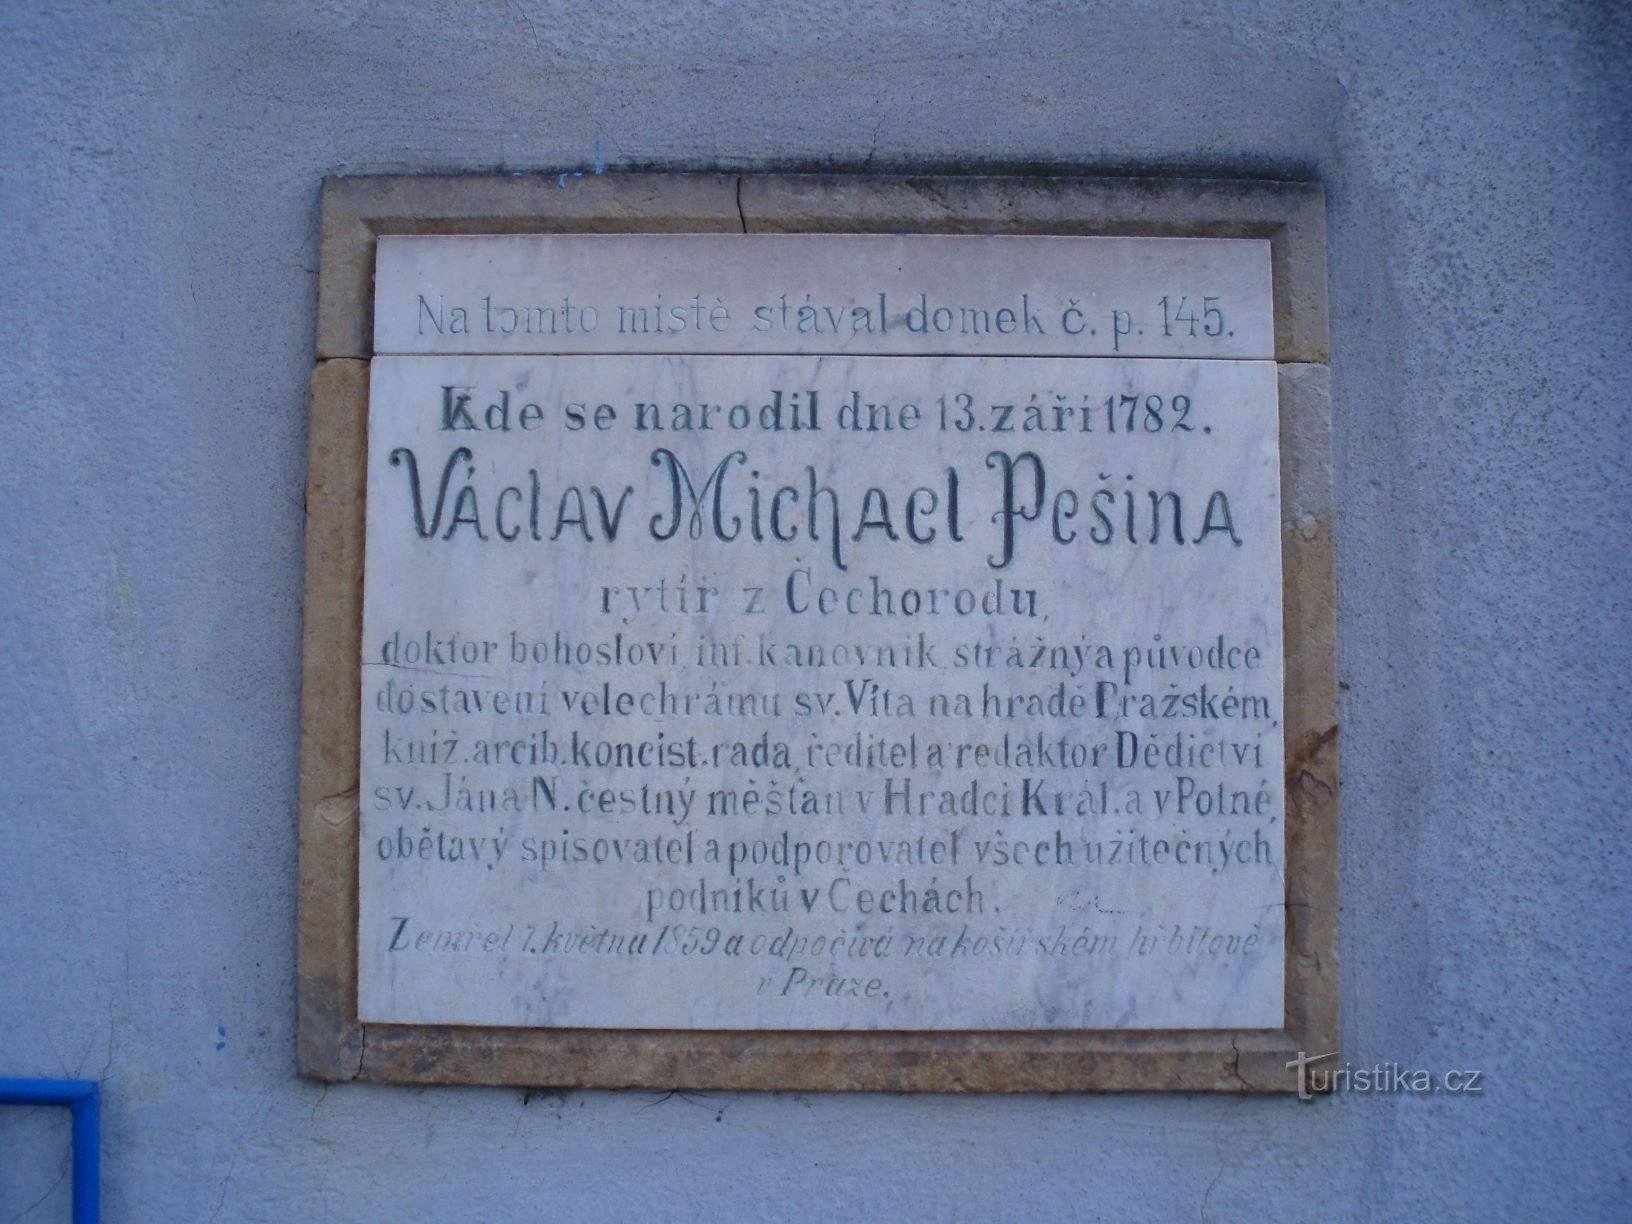 Tấm bảng tưởng niệm Václav Michael Pešin, hiệp sĩ từ Čechorod (Hradec Králové, 22.11.2009/XNUMX/XNUMX)